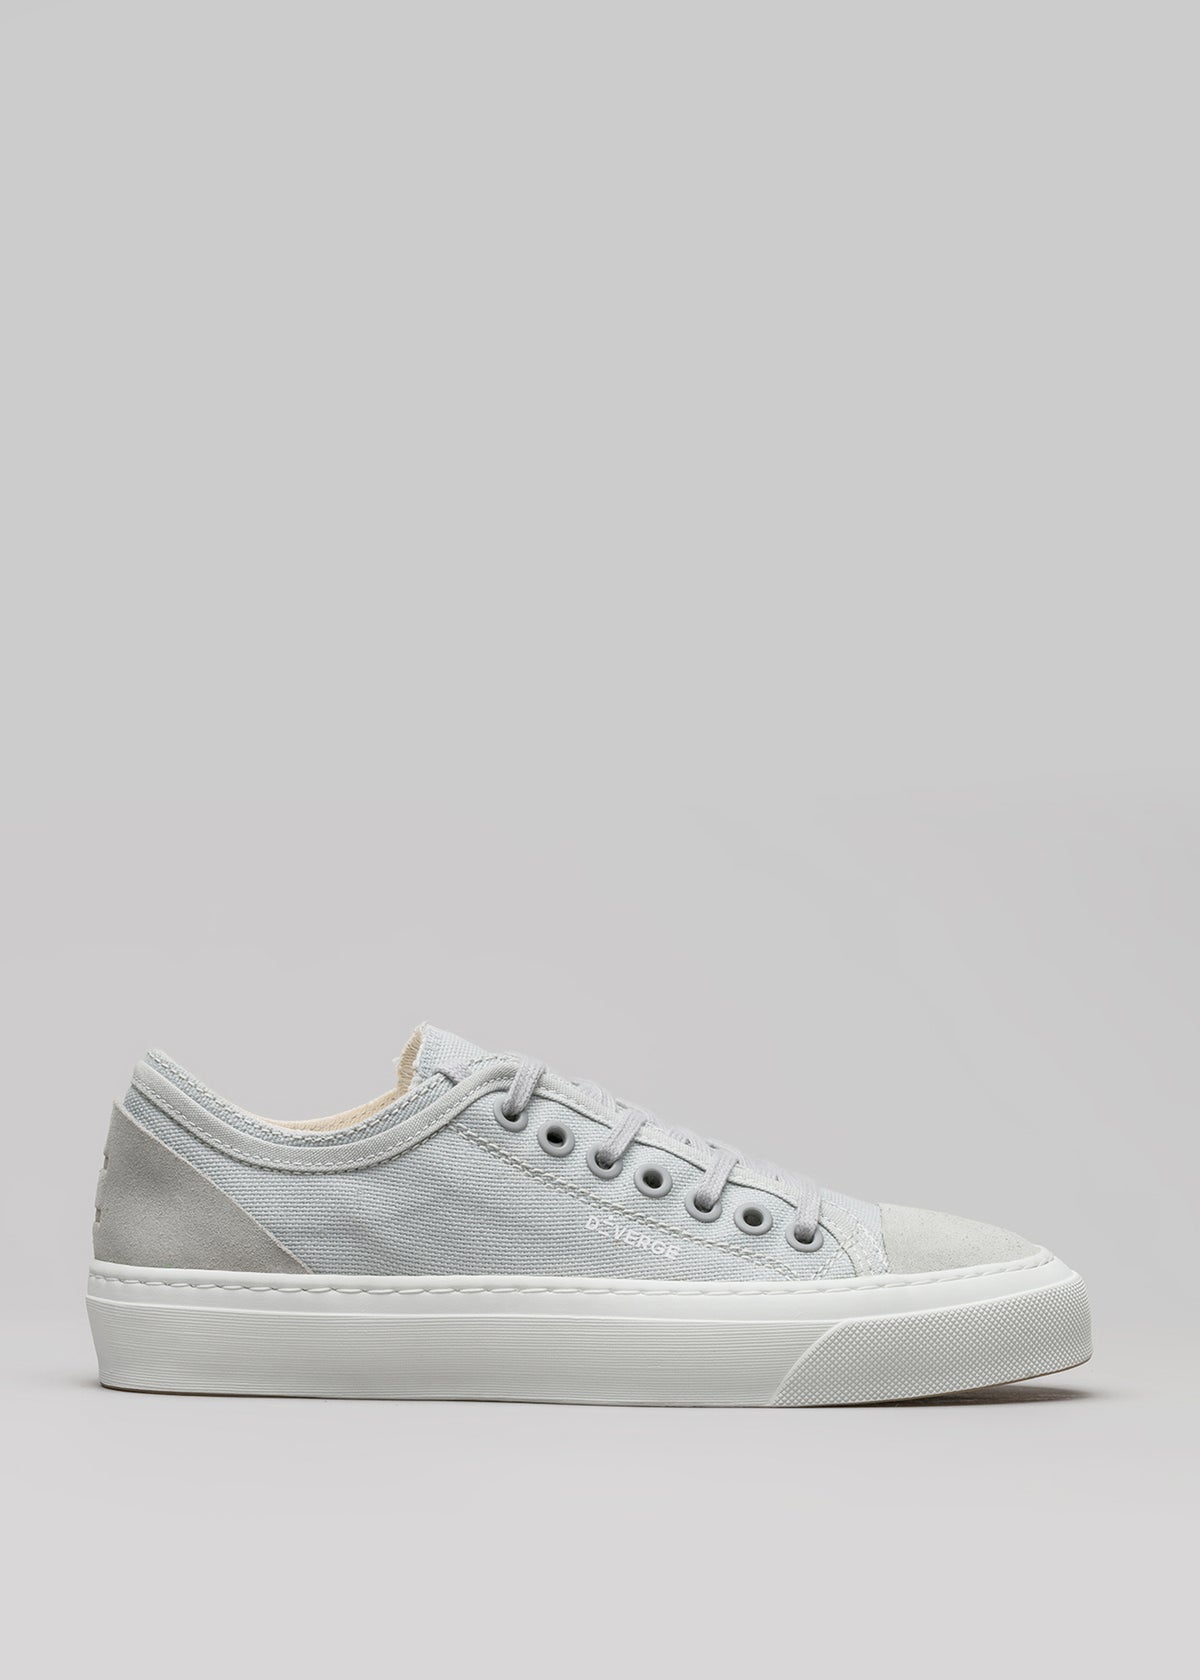 Ein einzelner V3 Full Color Grey Low-Top-Sneaker mit weißen Schnürsenkeln und einer weißen Gummisohle, die vor einem einfarbig grauen Hintergrund steht.